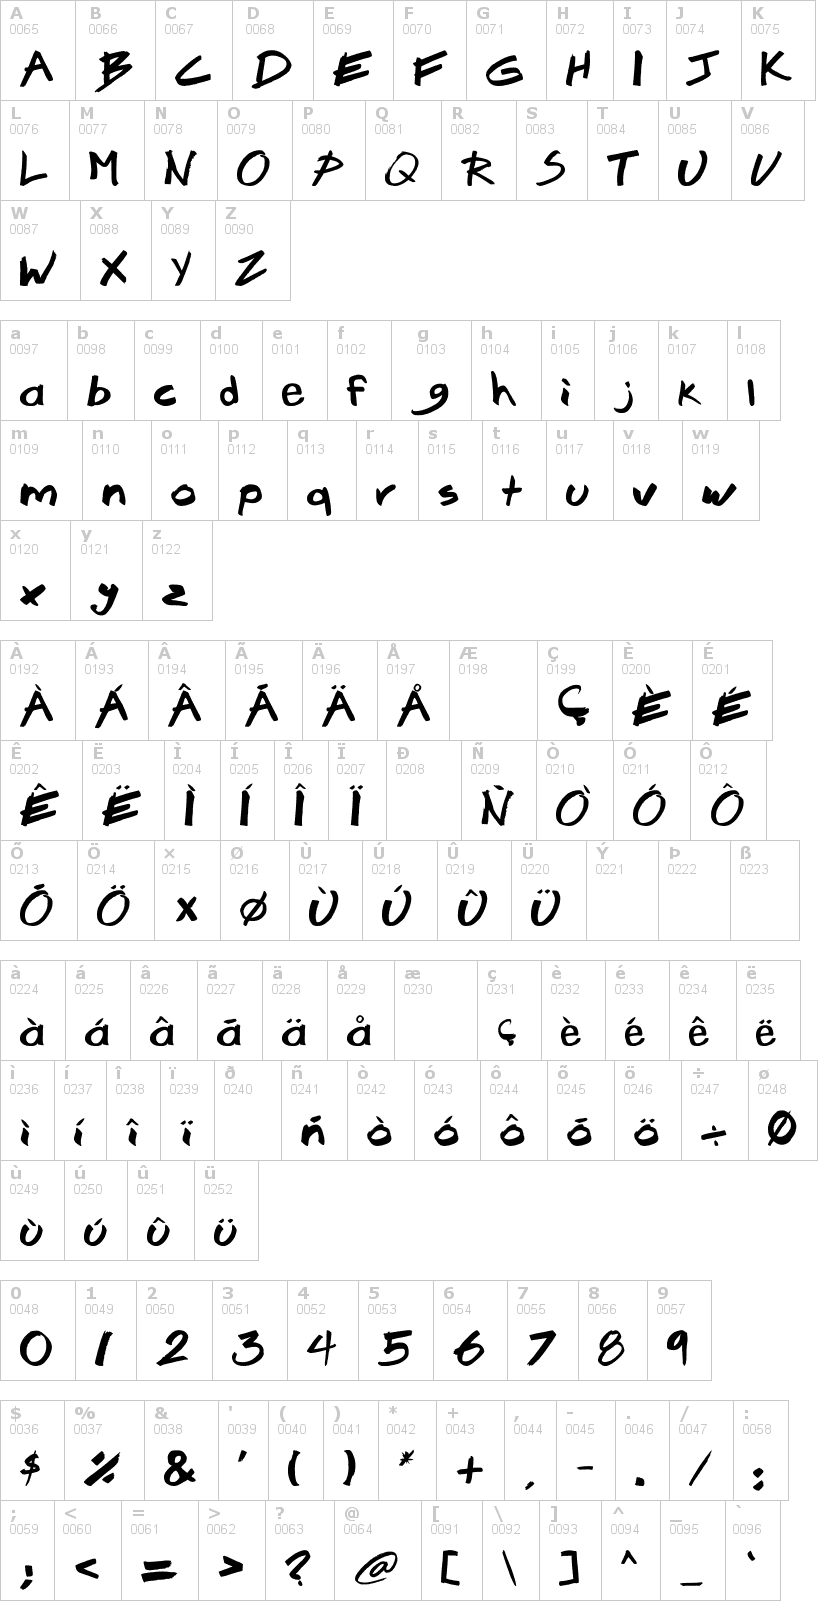 Lettere dell'alfabeto del font brook-23 con le quali è possibile realizzare adesivi prespaziati